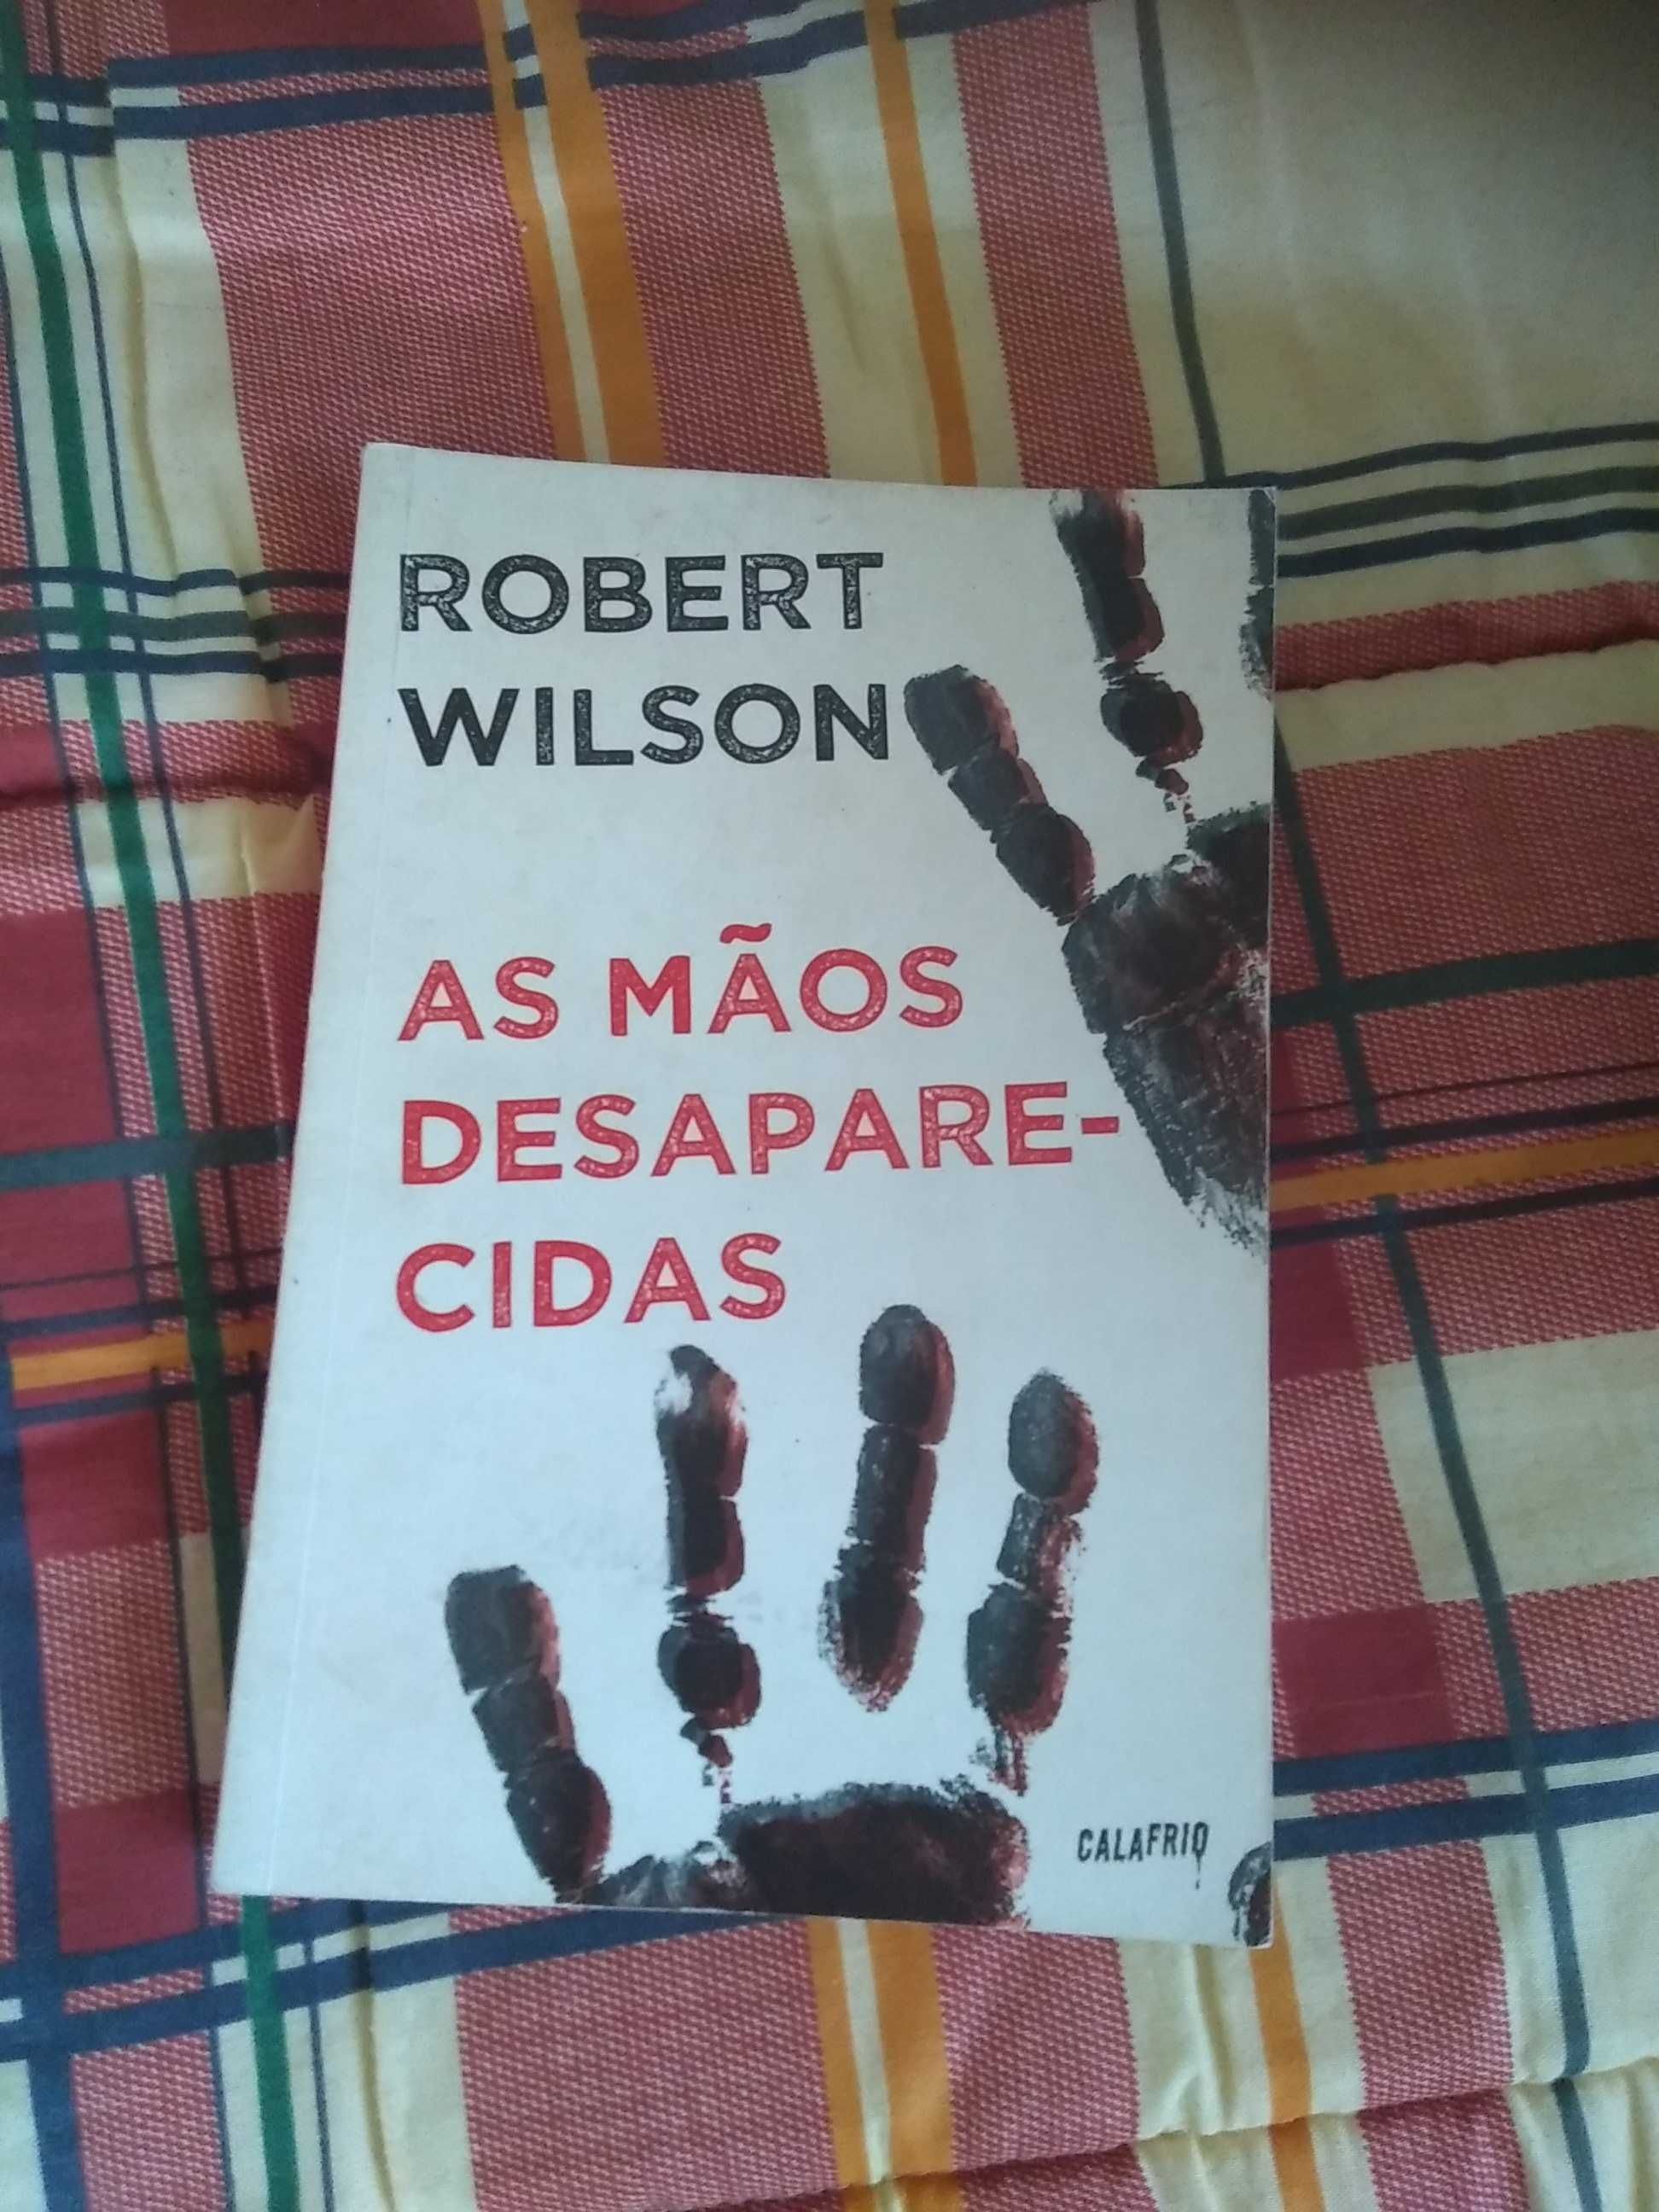 Robert Wilson - As mãos desaparecidas